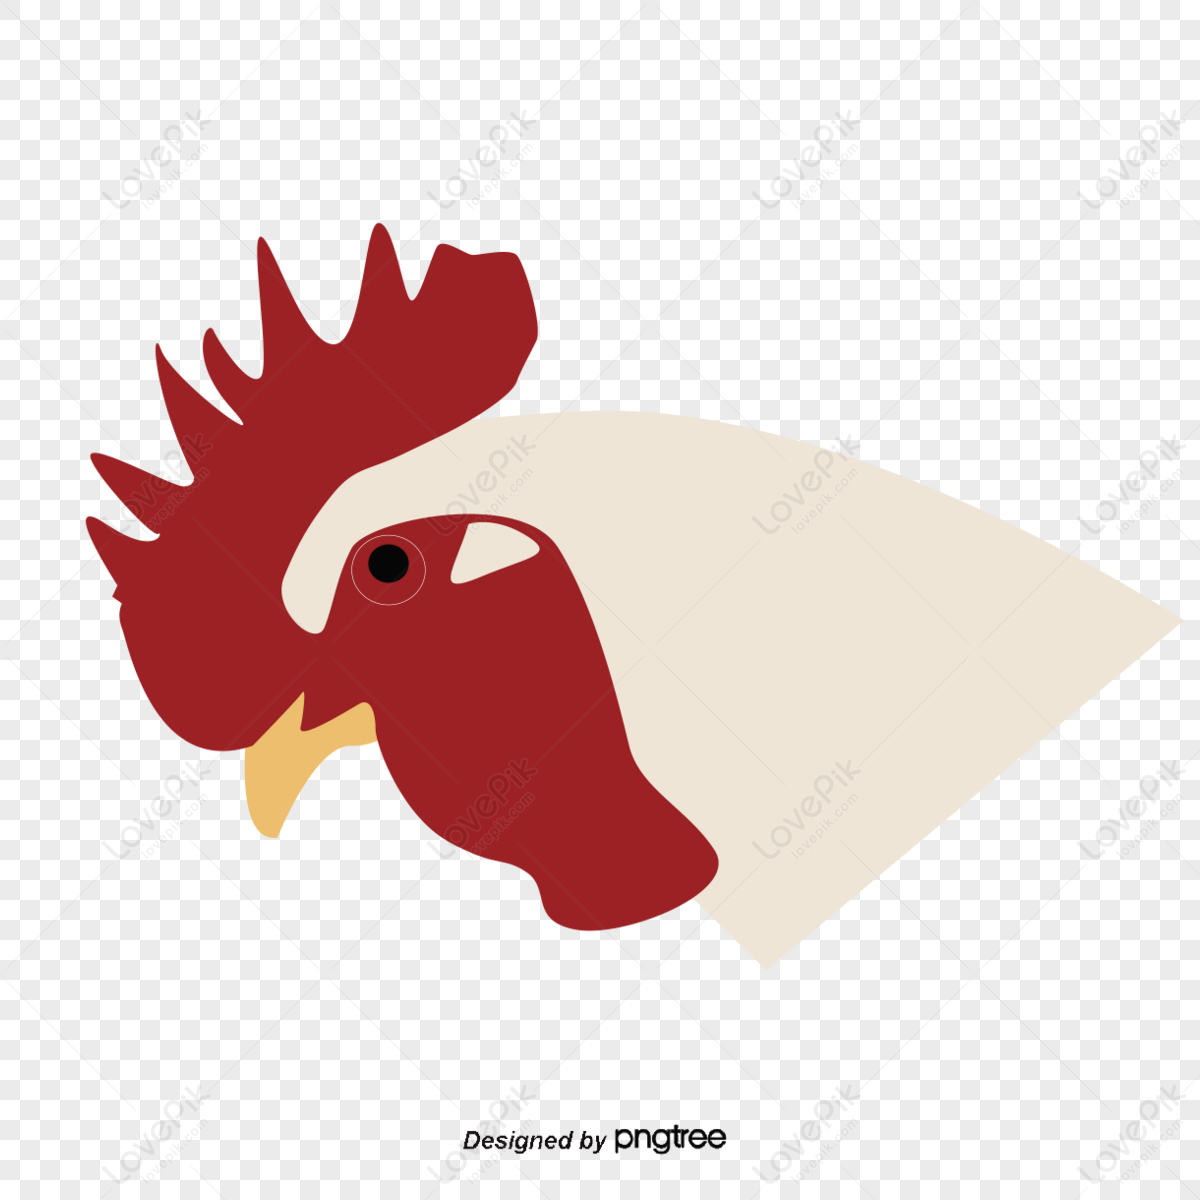 2d Cartoon Chicken Stock Illustrations – 135 2d Cartoon Chicken Stock  Illustrations, Vectors & Clipart - Dreamstime